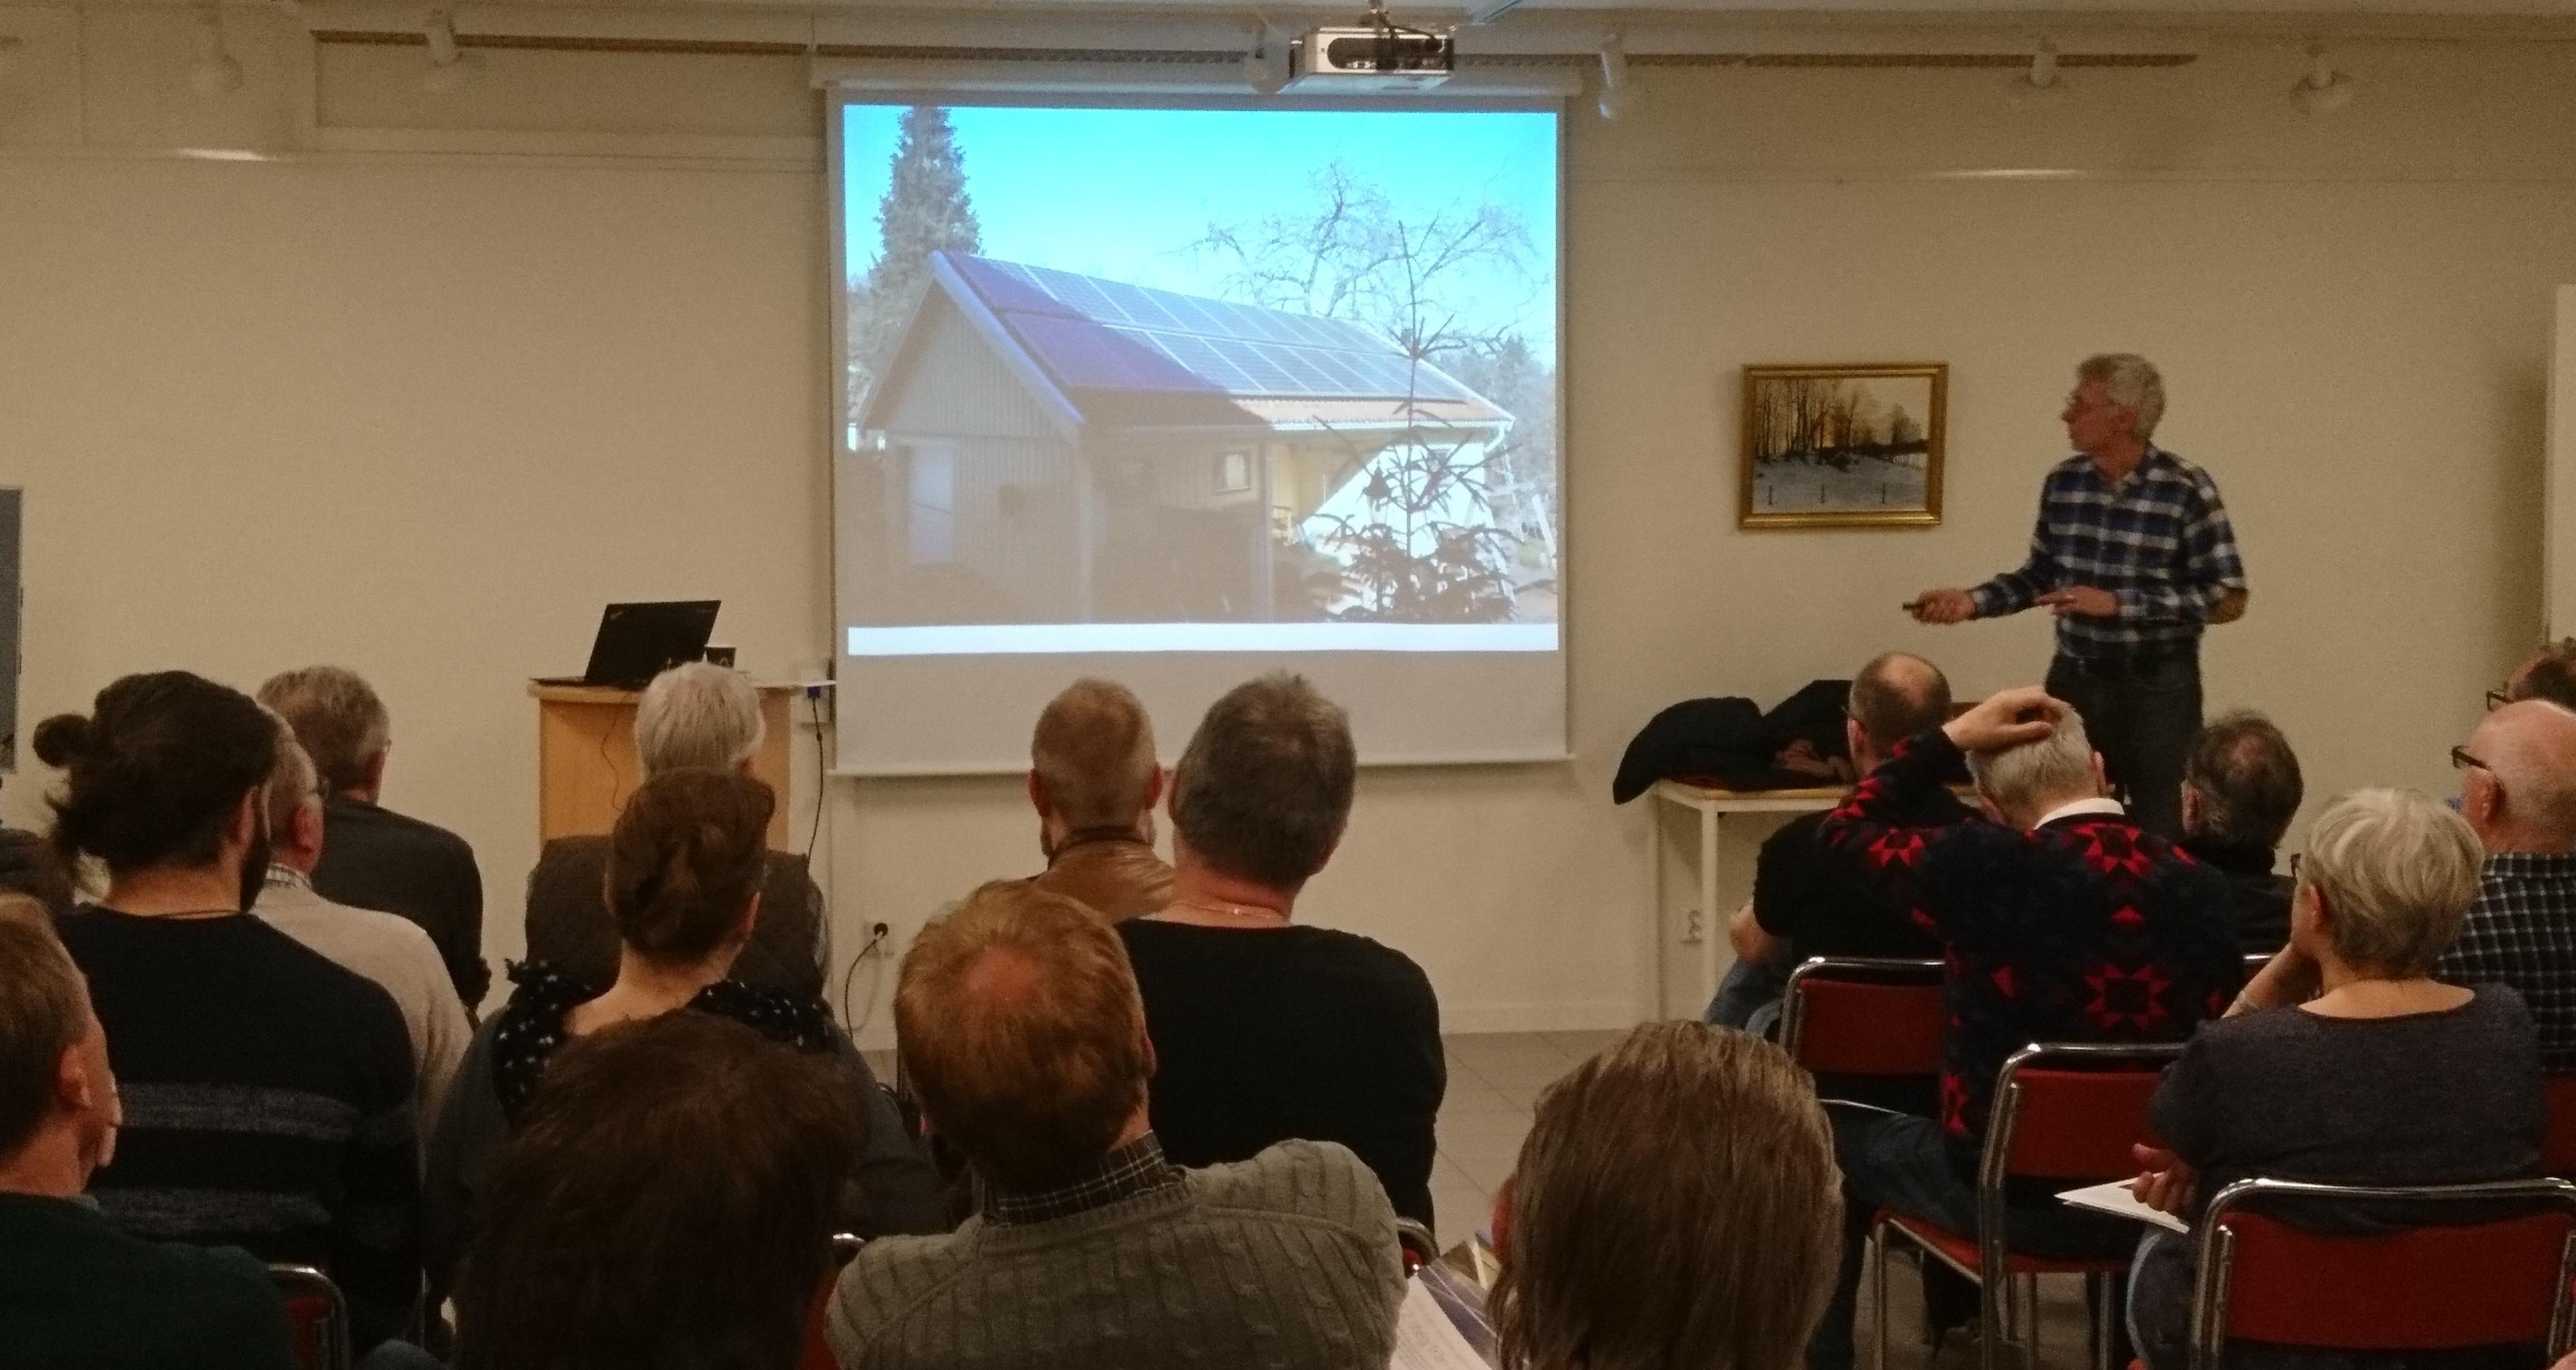 Ett 40-tal personer samlades i bibliotekets hörsal för att lyssna på en föreläsning om solceller. Föreläsningen hölls av Perstorps kommunens energi- och klimatrådgivare, Ann-Kristine Nilsson tillsammans med Lars Ivarsson, som arbetat med solceller under många år. Fyll i beskrivning av bilden